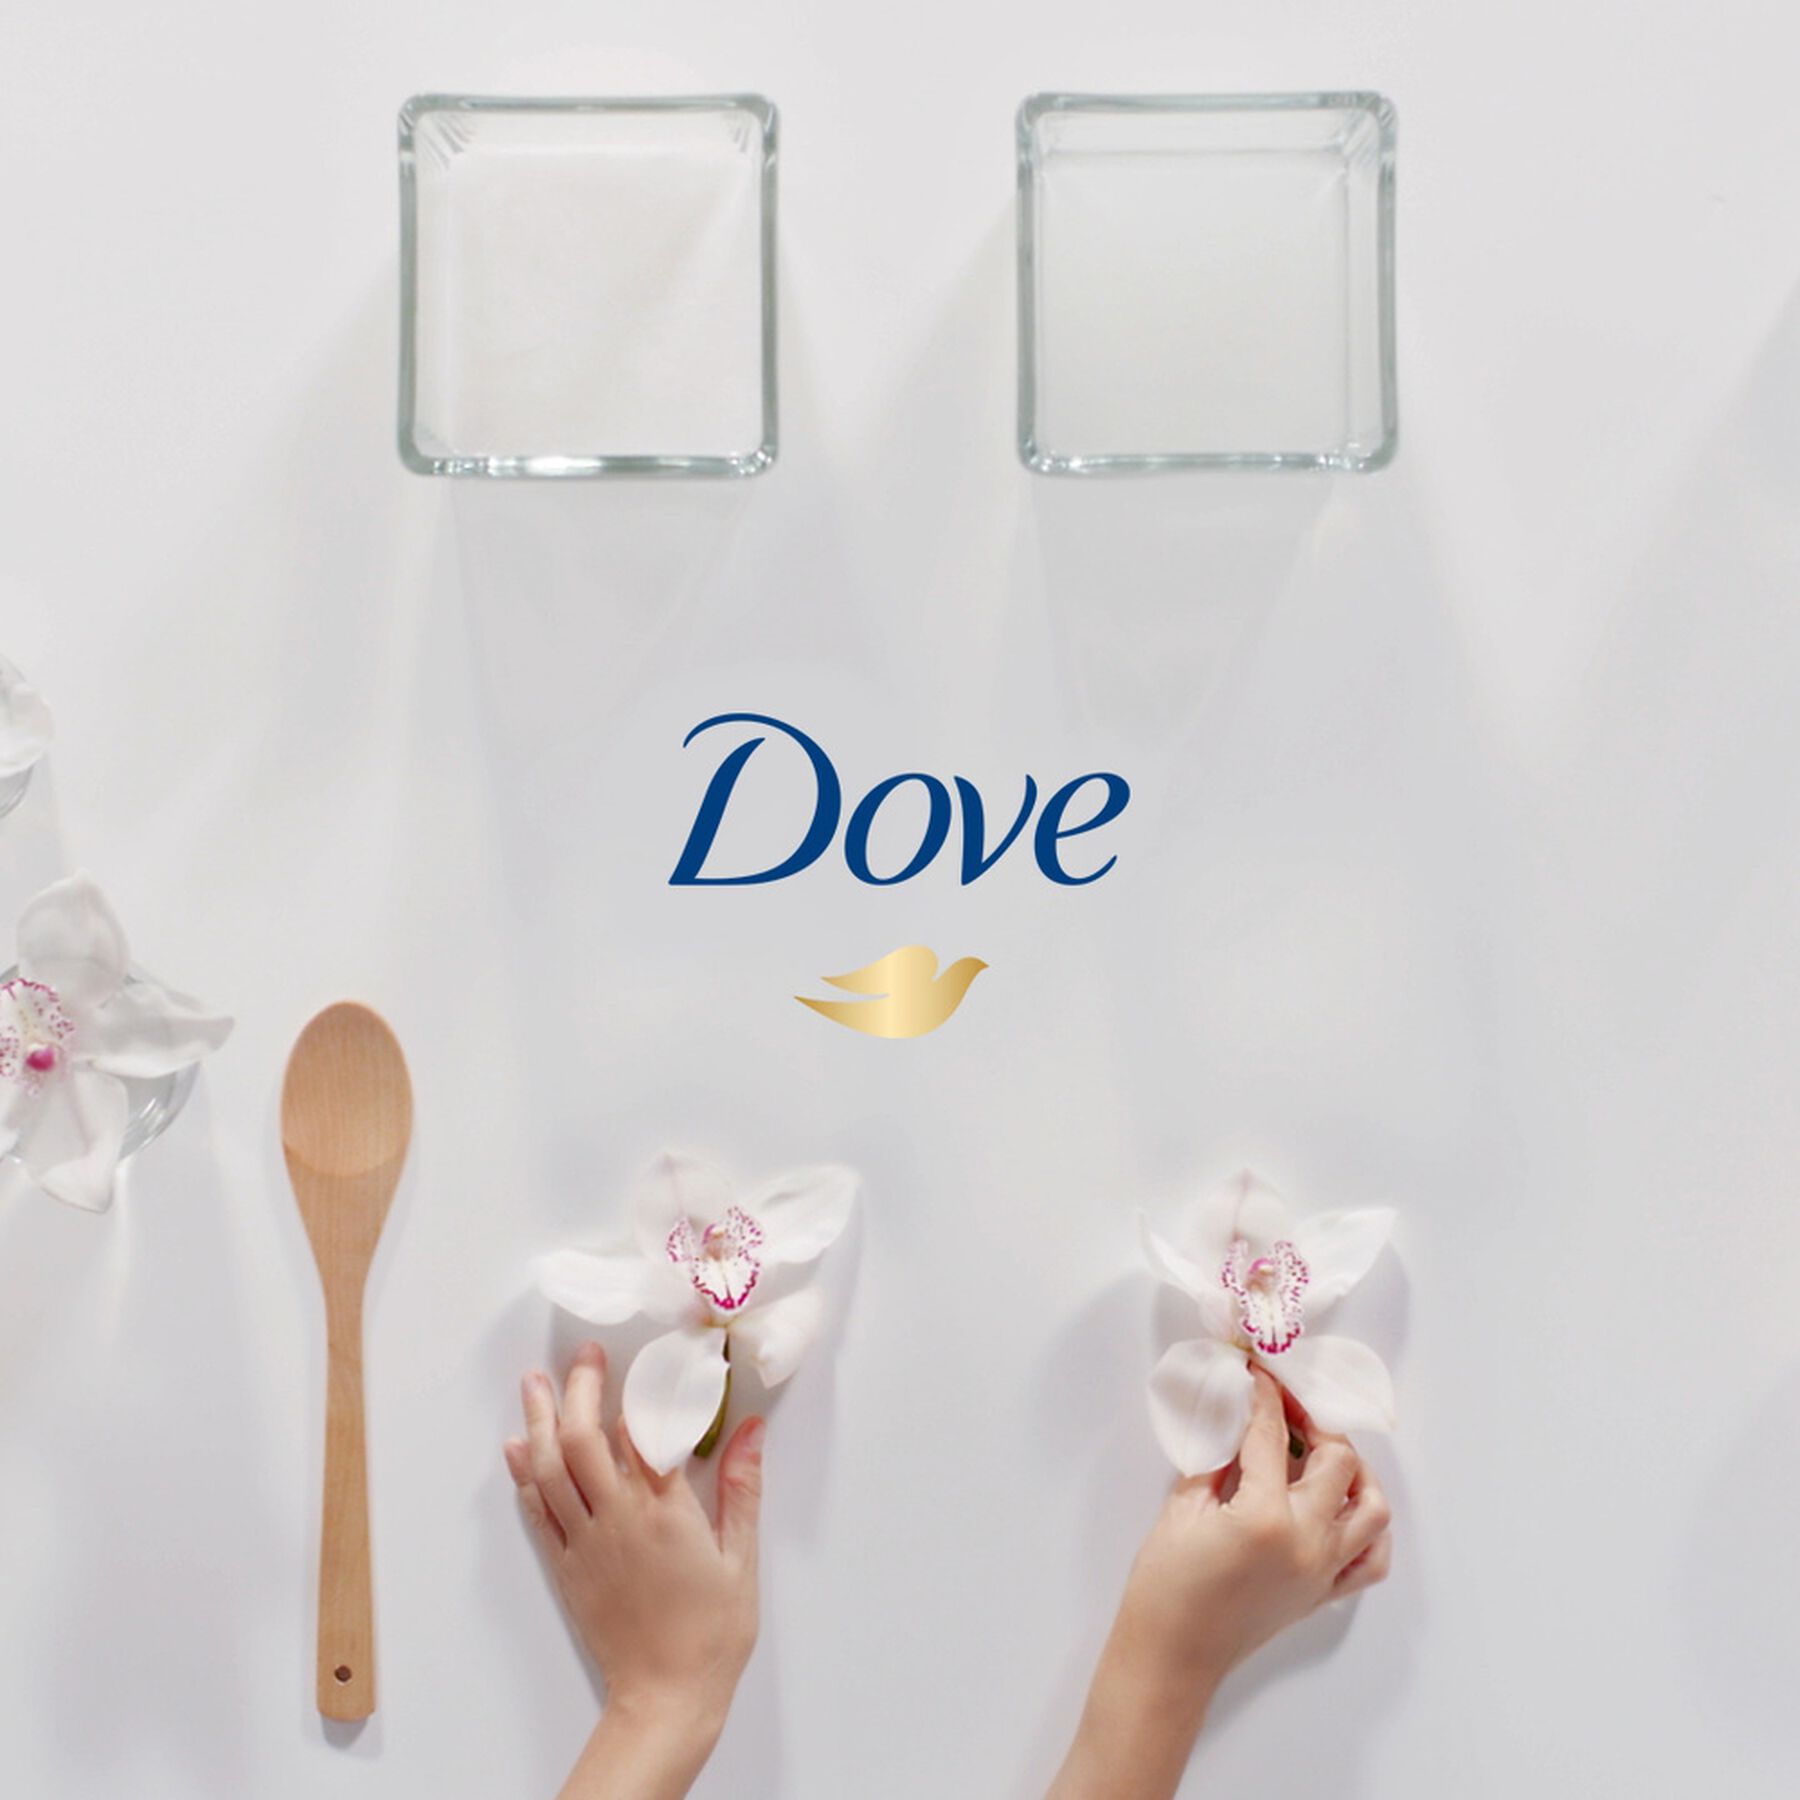 Condicionador Dove Nutrição + Fusão de Óleos 400 ml